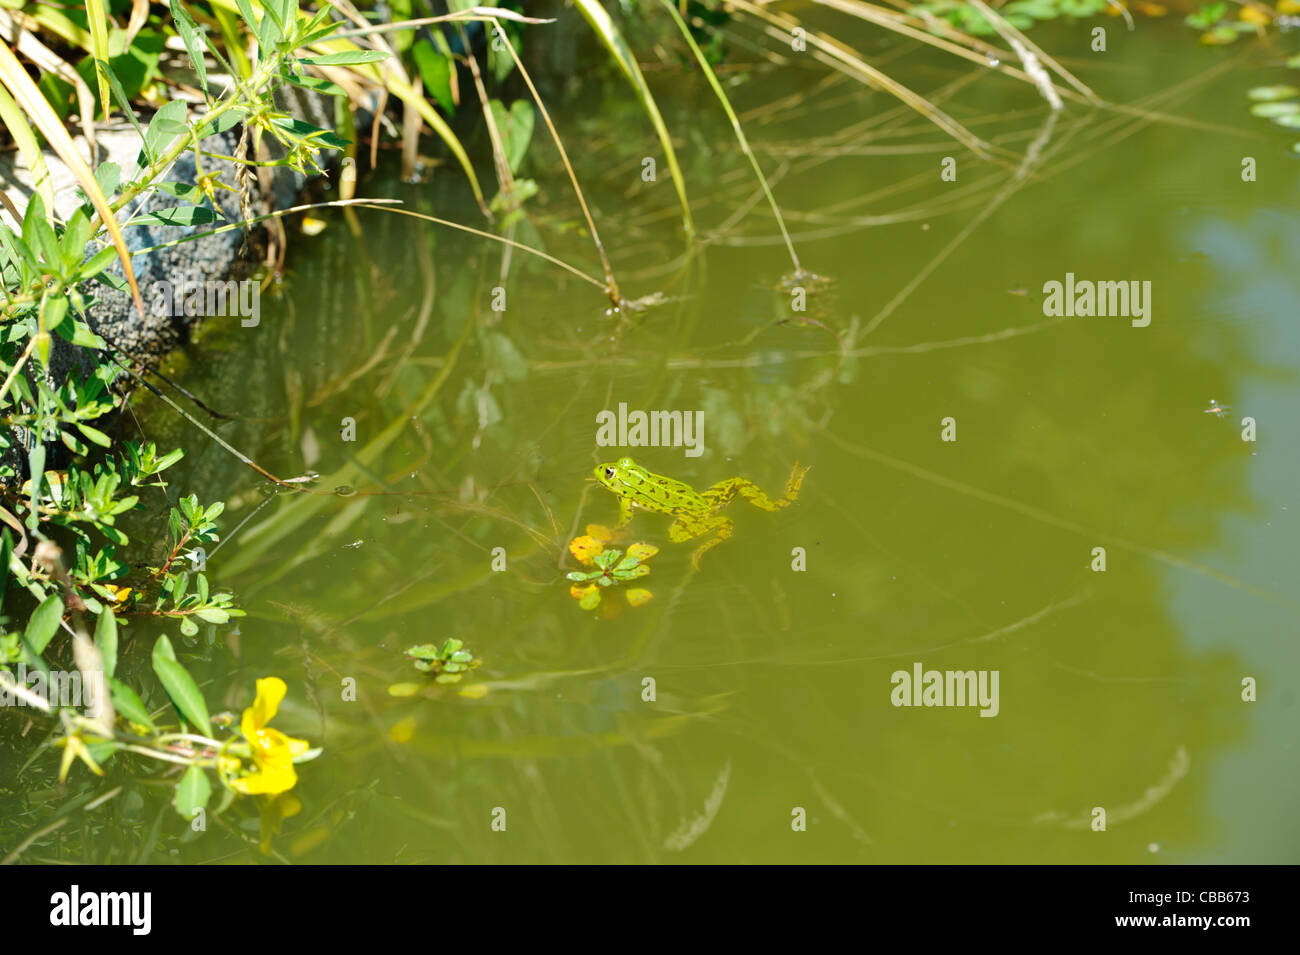 Stock Foto von einem Frosch im Teich. Stockfoto